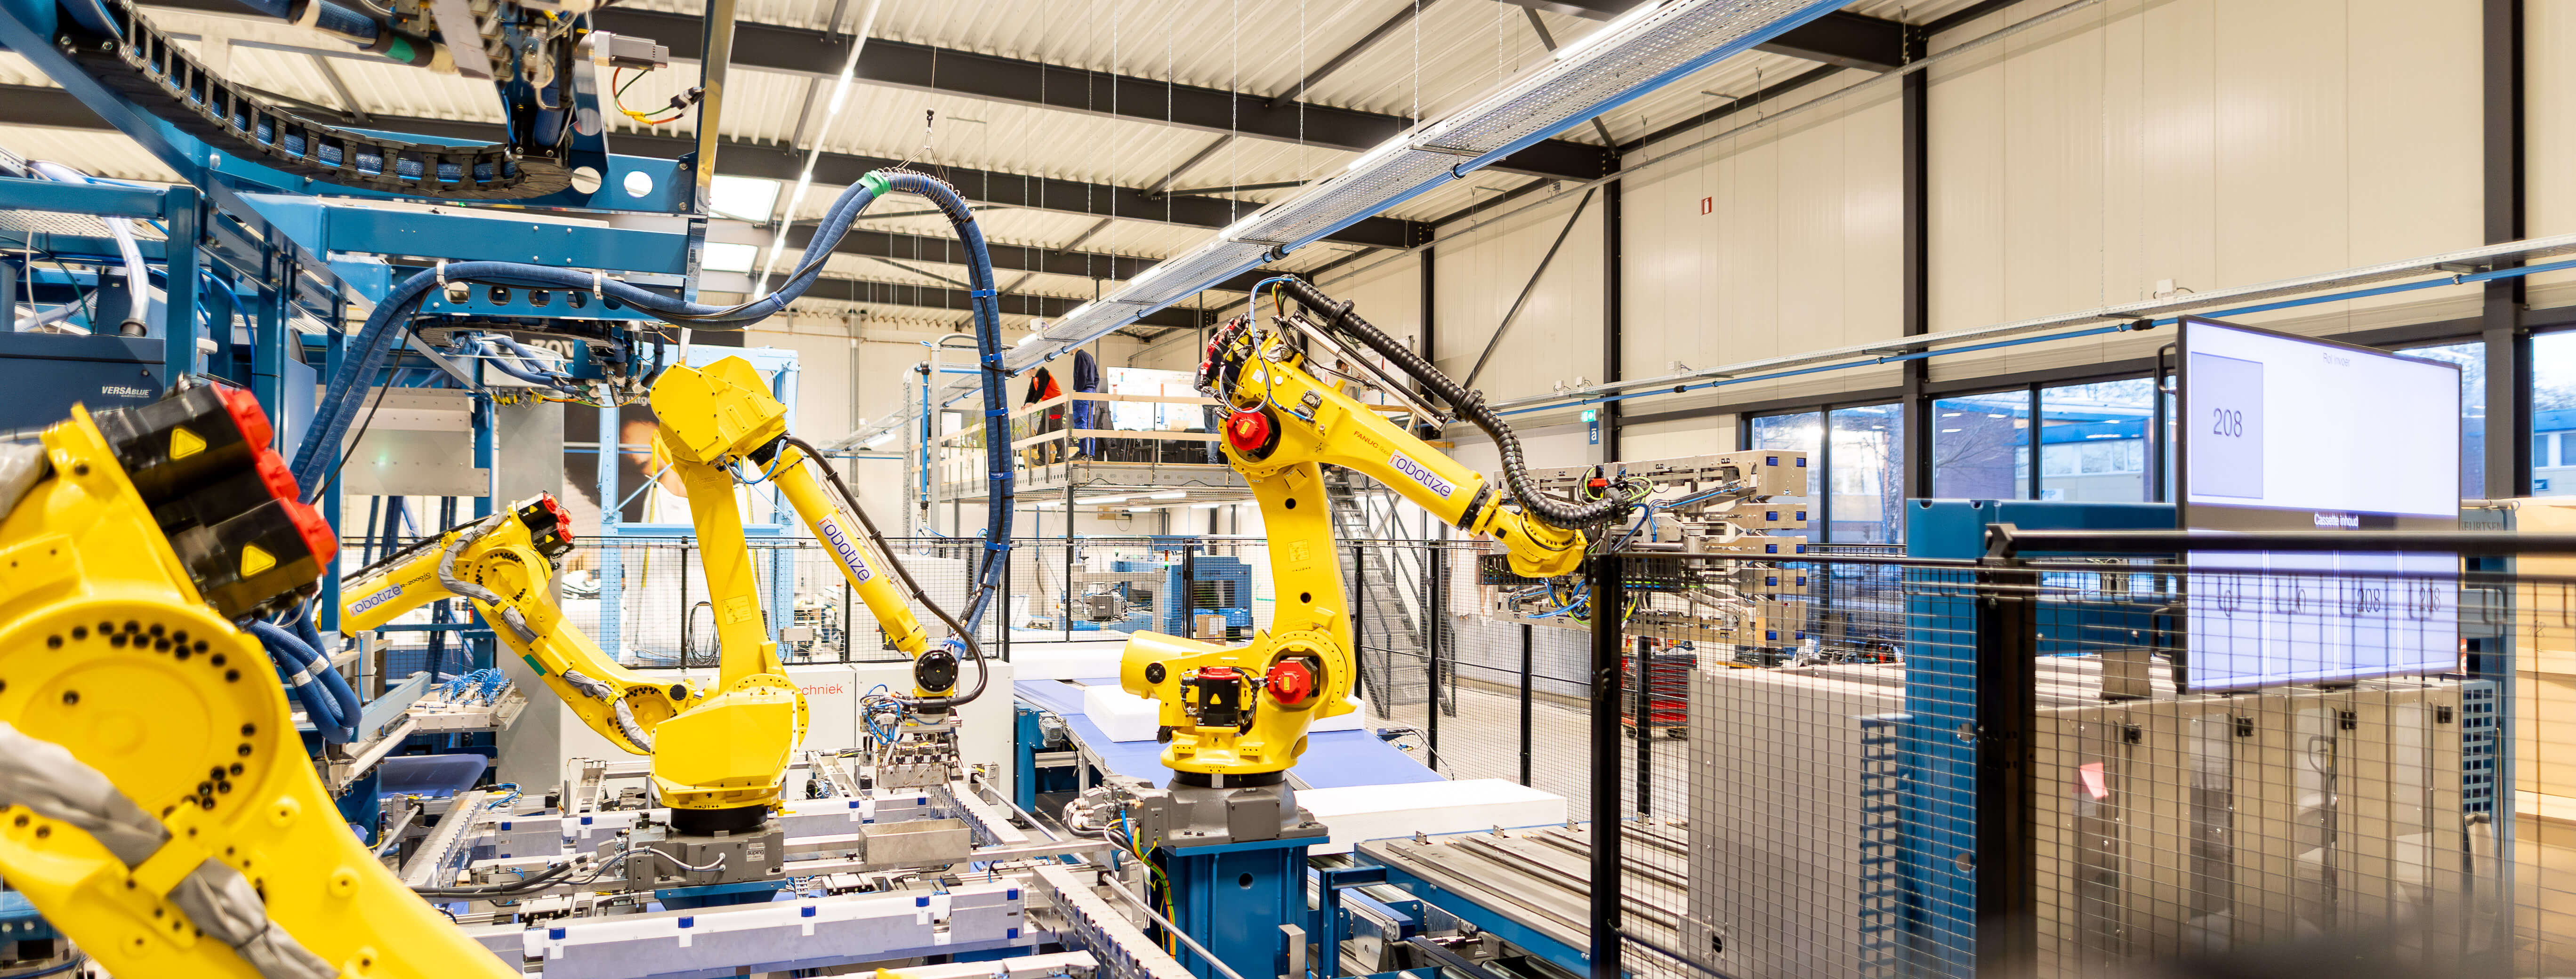 Auping - Robotize nieuw type productielijn